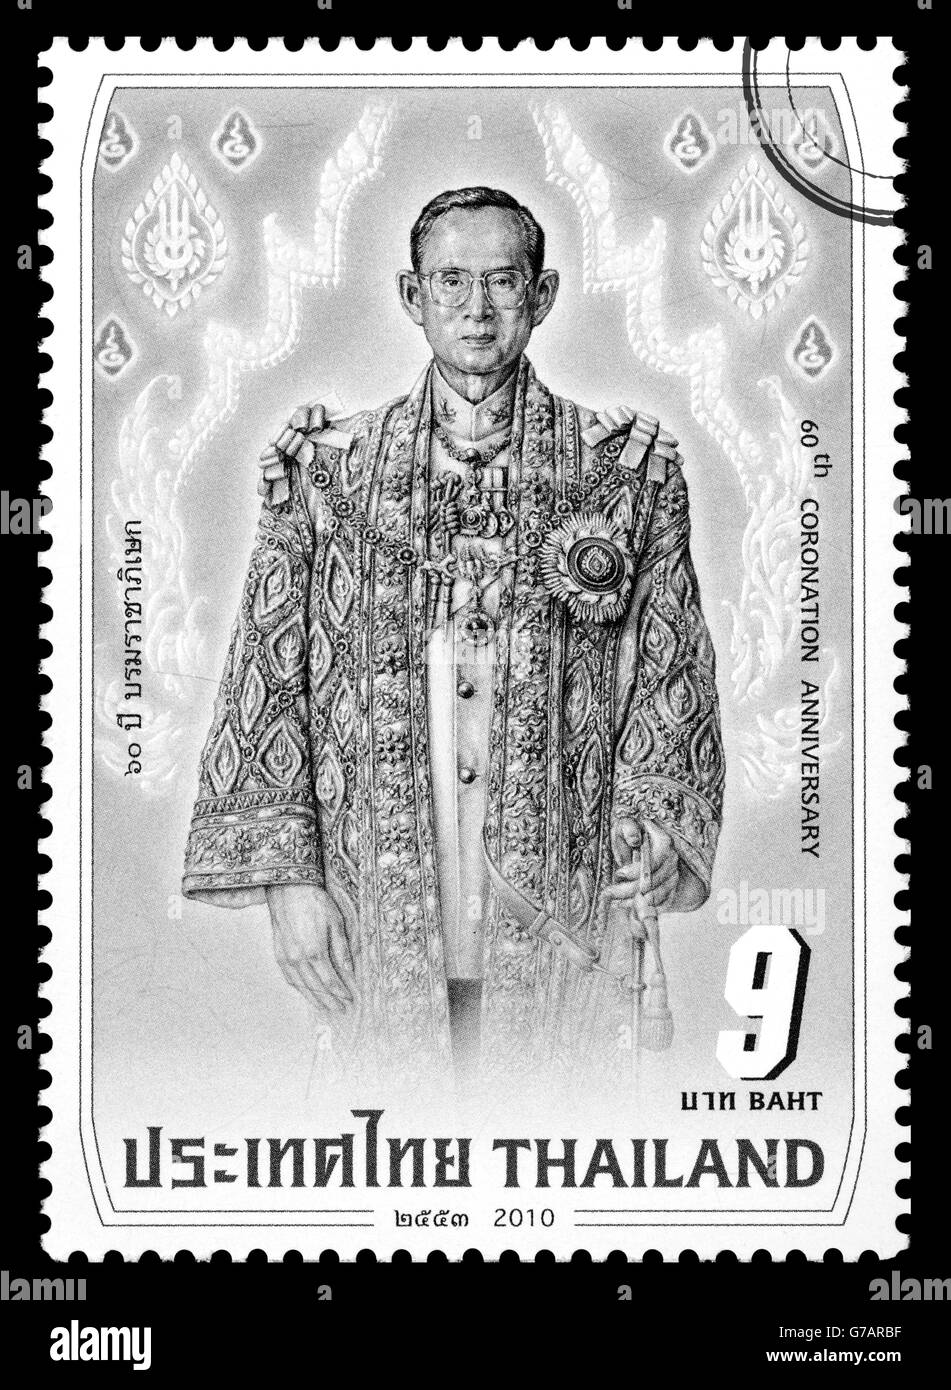 Un timbre-poste de Sa Majesté le Roi Bhumibol Adulyadej de Thaïlande de célébration du 60e anniversaire du couronnement. Banque D'Images